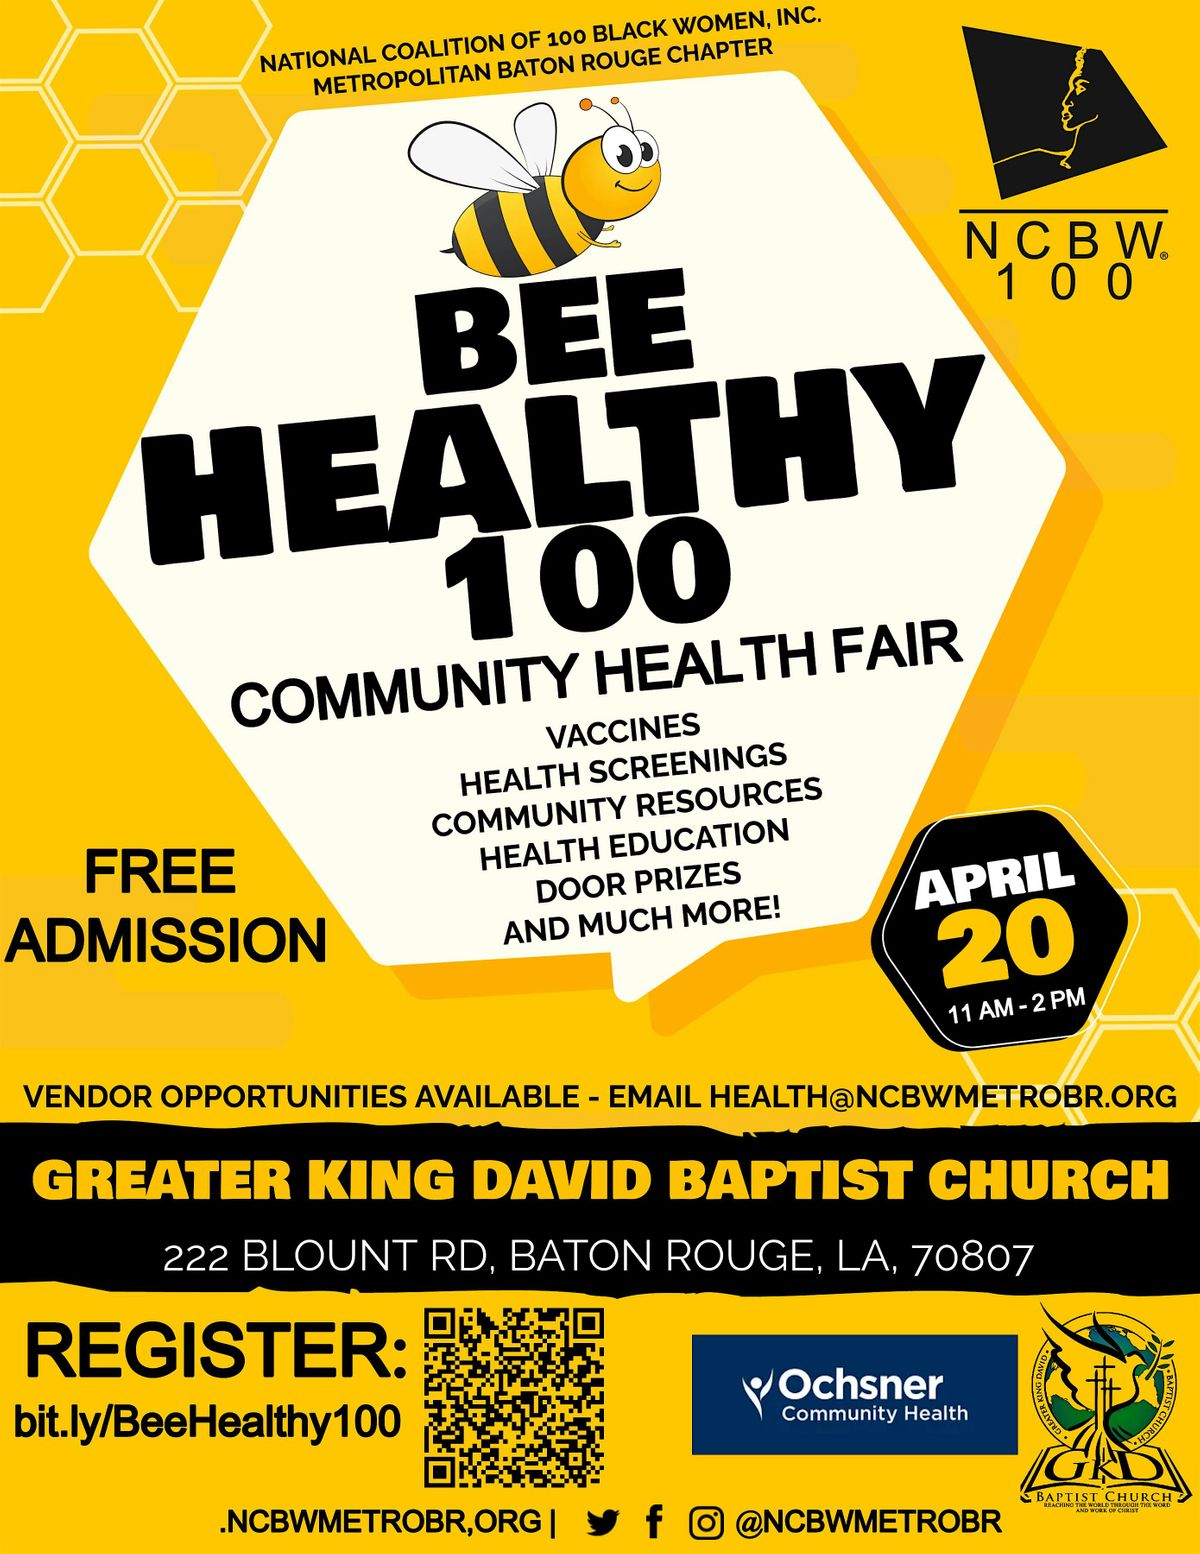 Bee Healthy 100 - Community Health Fair